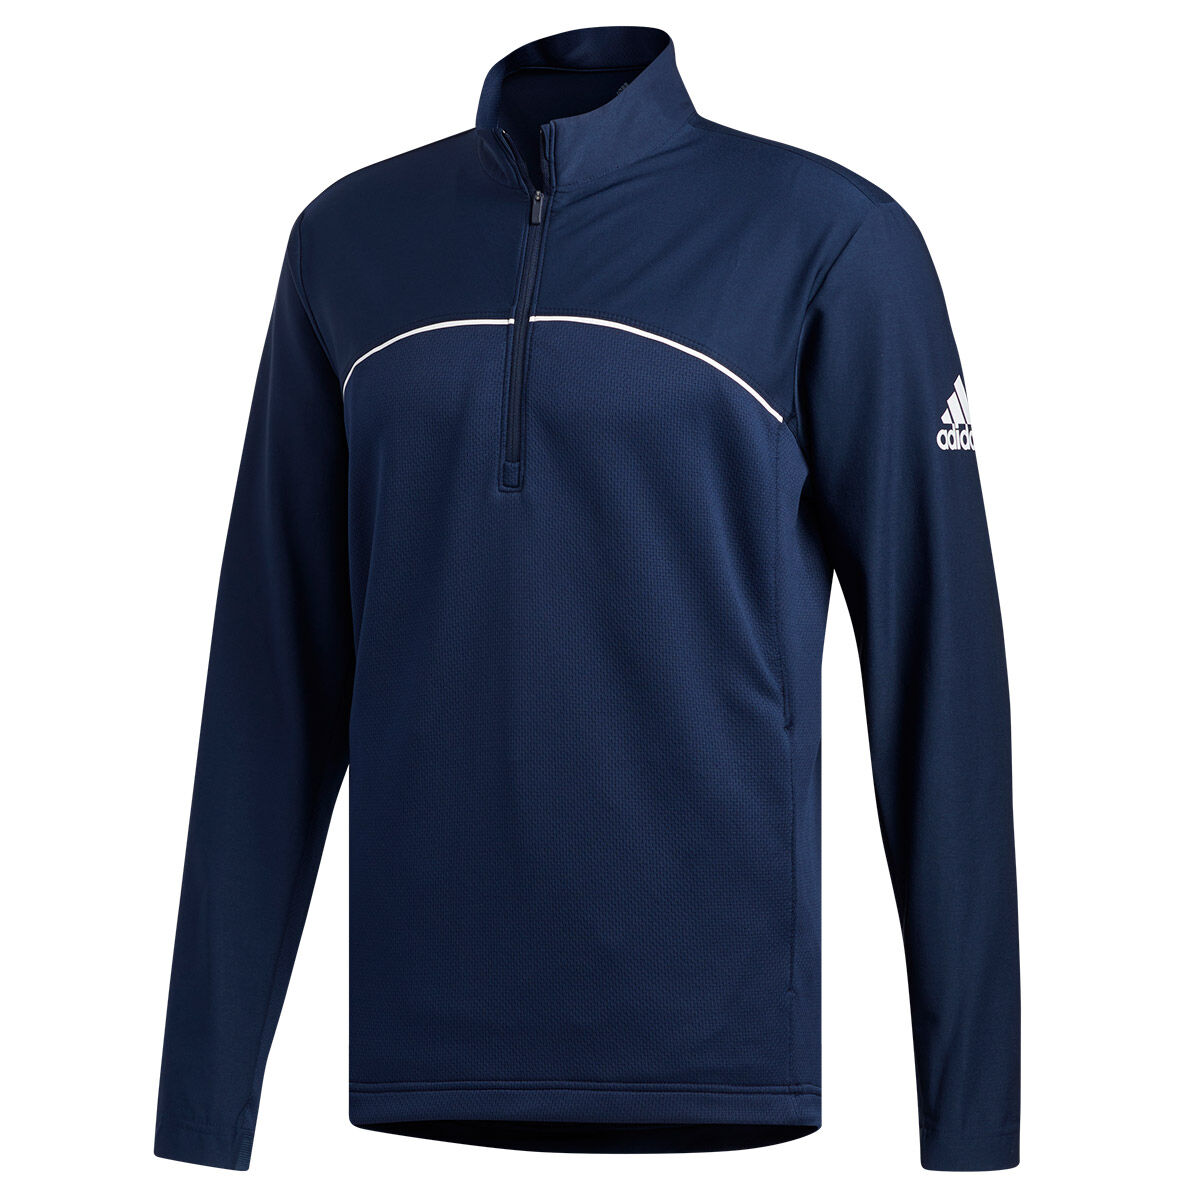 Veste adidas Golf Go-To 1/4 Zip, homme, Petit, Collegiate navy | Online Golf